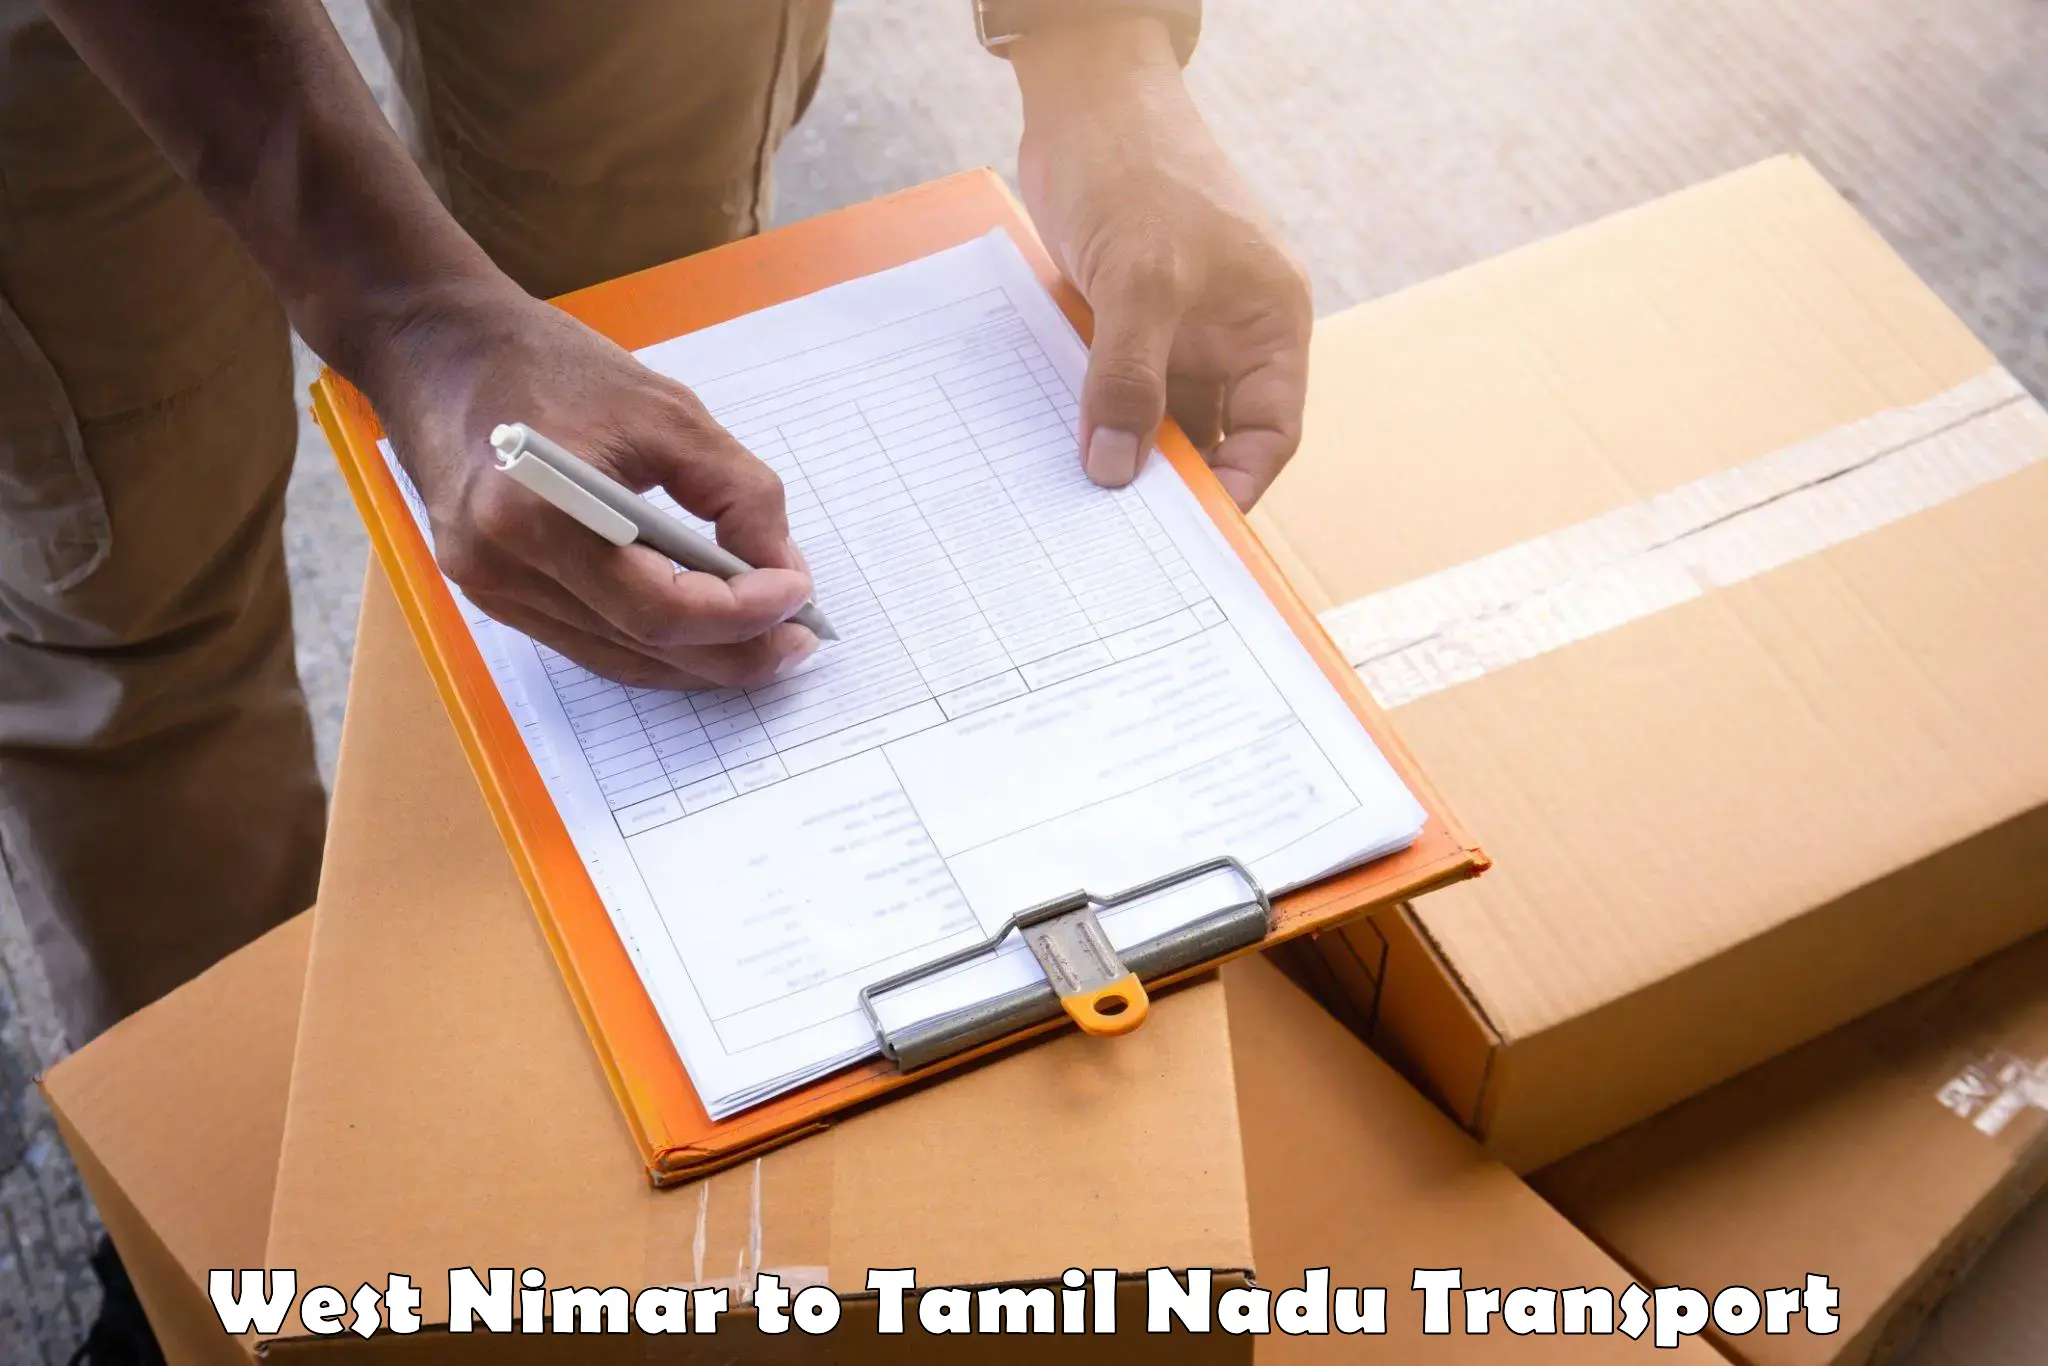 Intercity transport West Nimar to Anna University Chennai